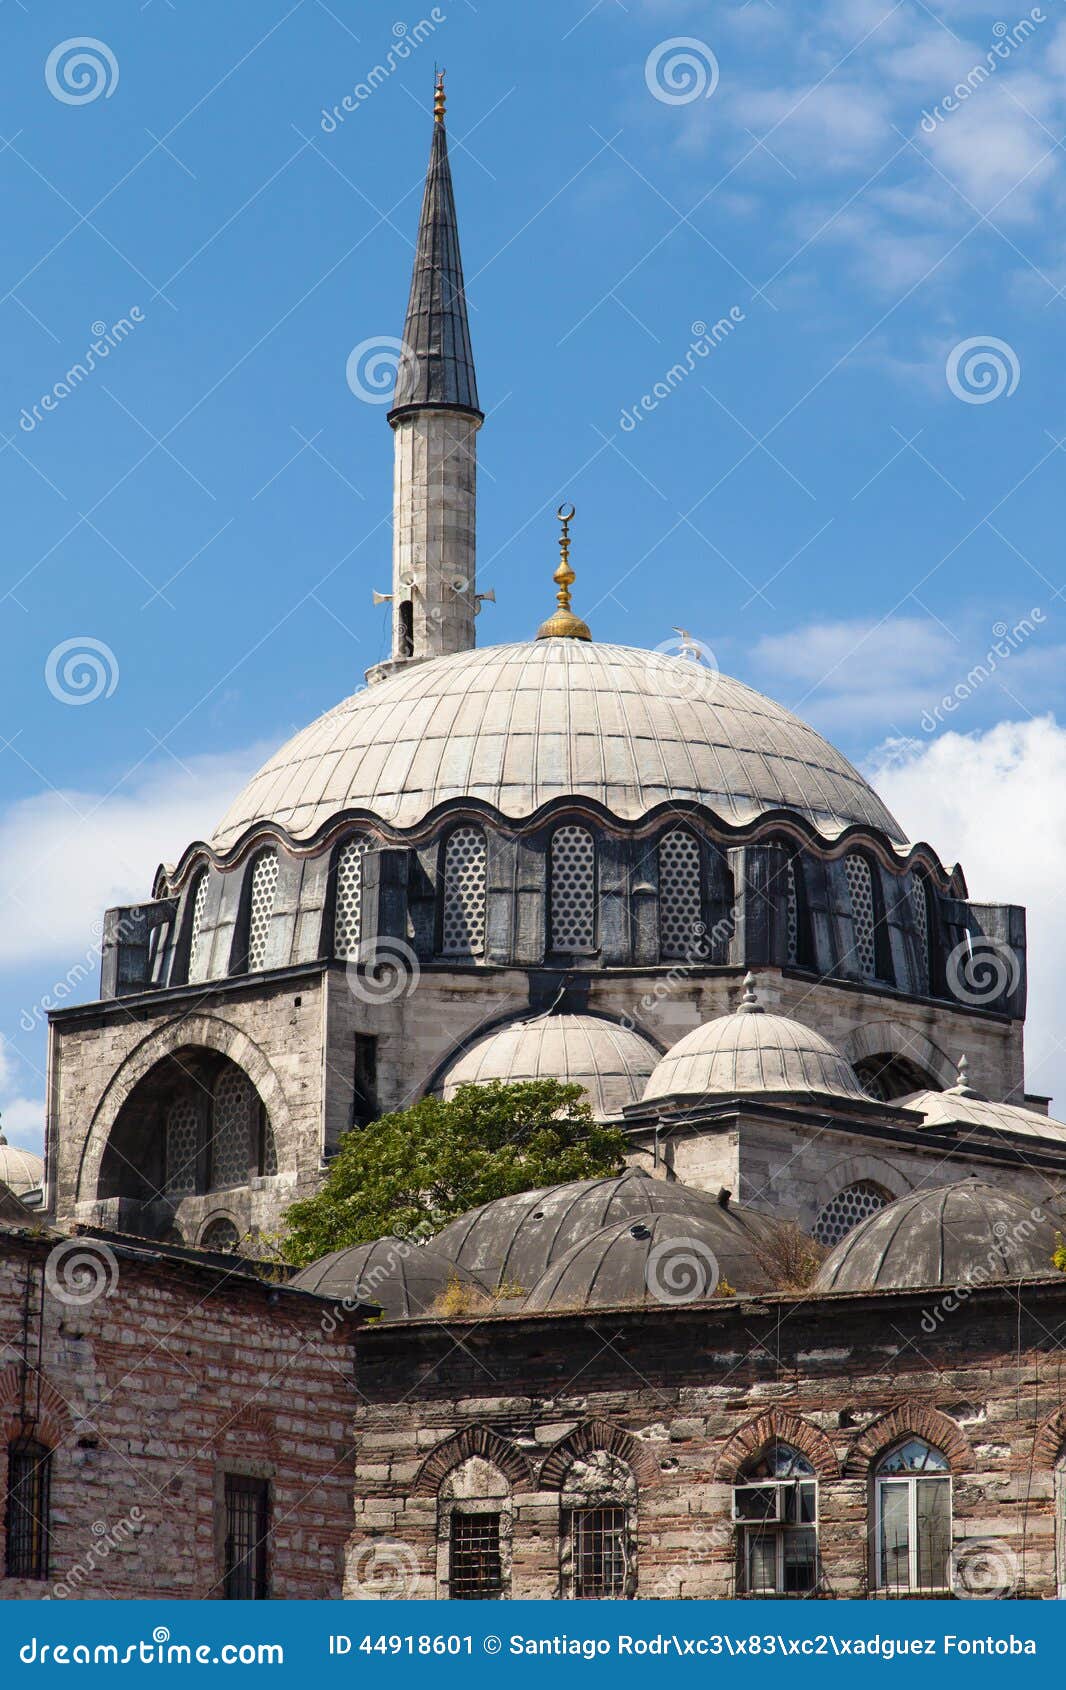 rustem pasa mosque